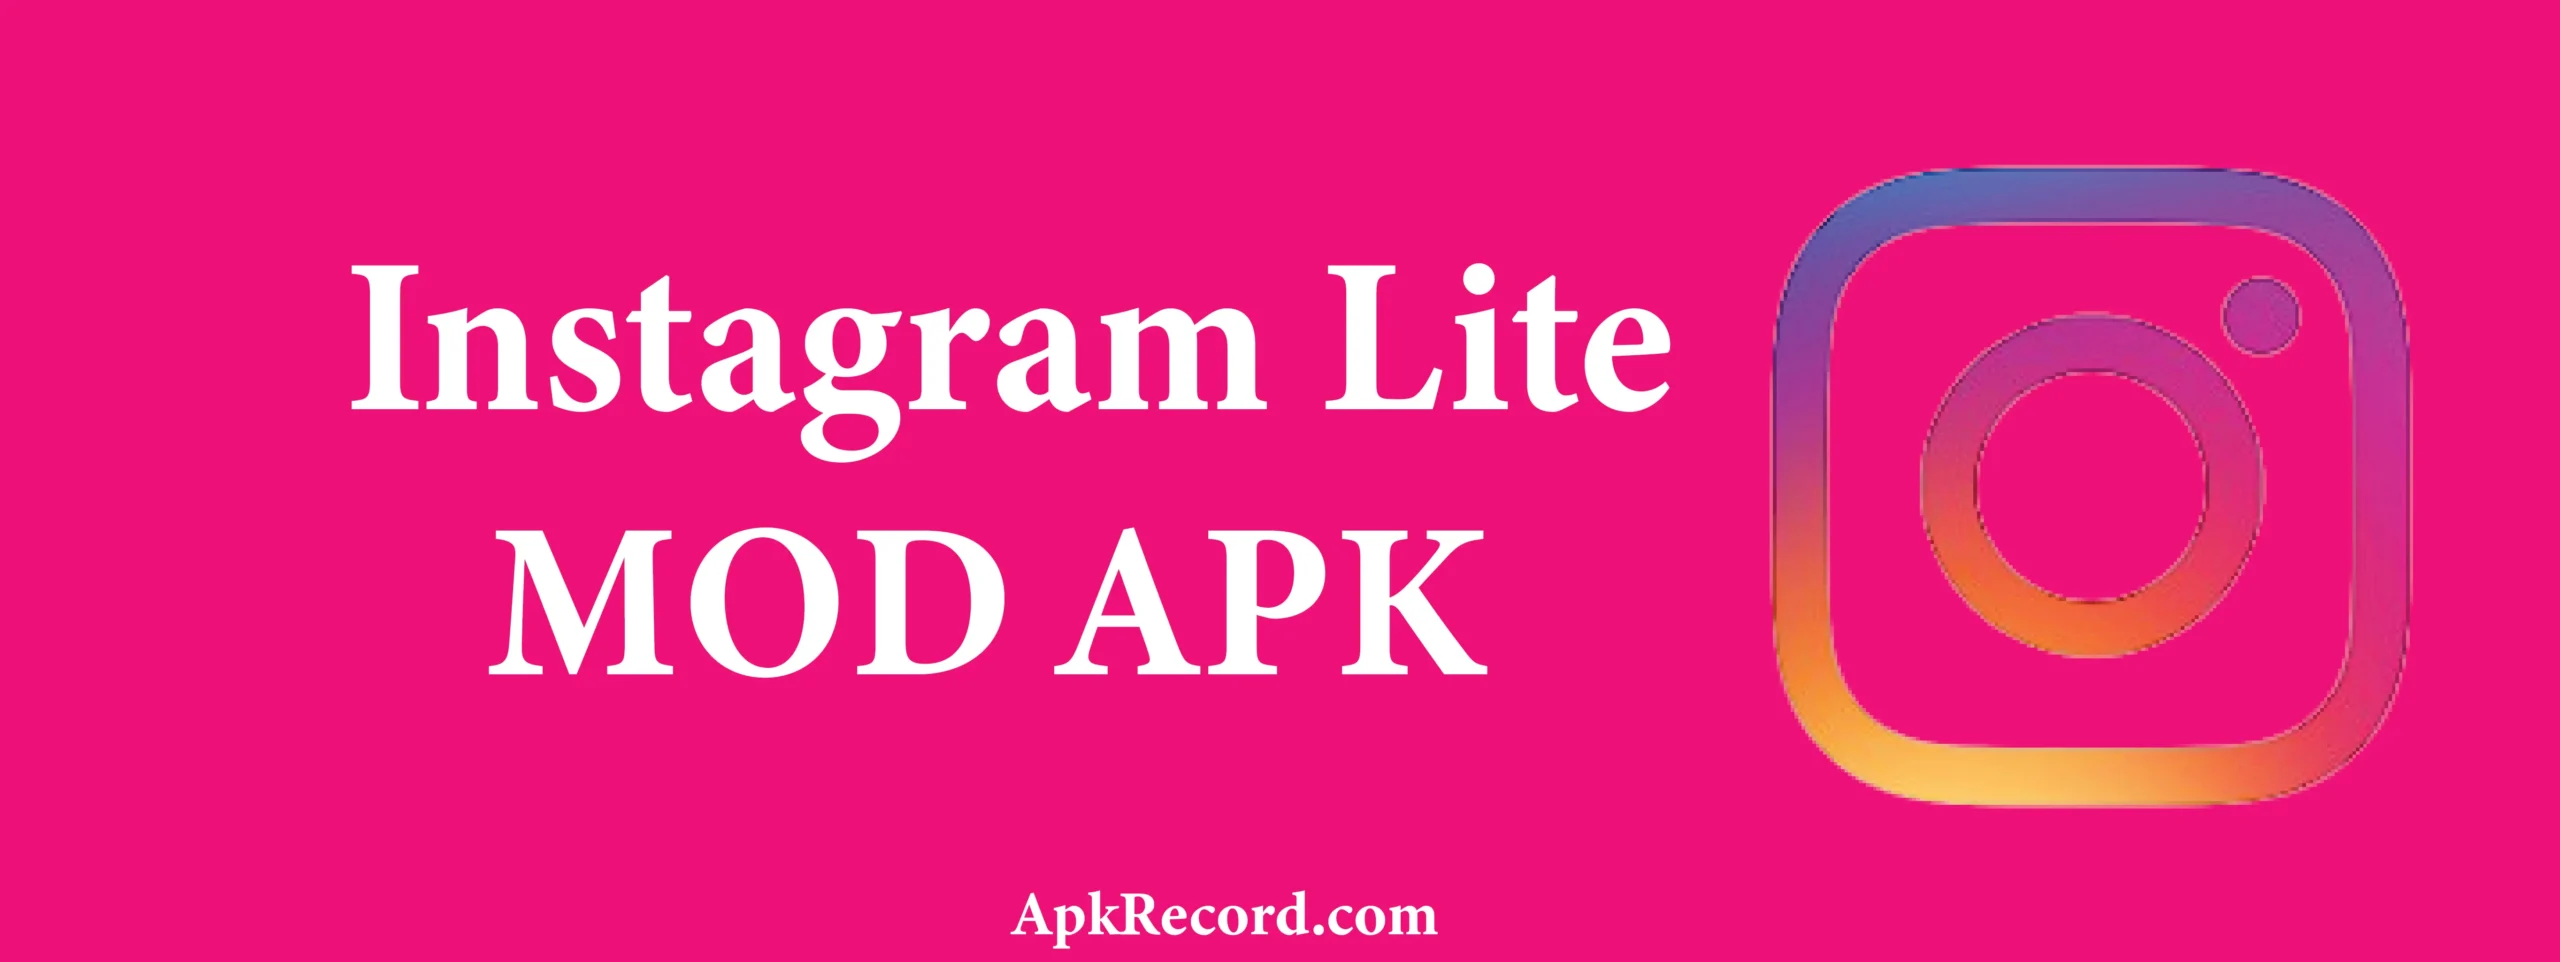 Instagram Lite MOD APK V387.0.0.5.114